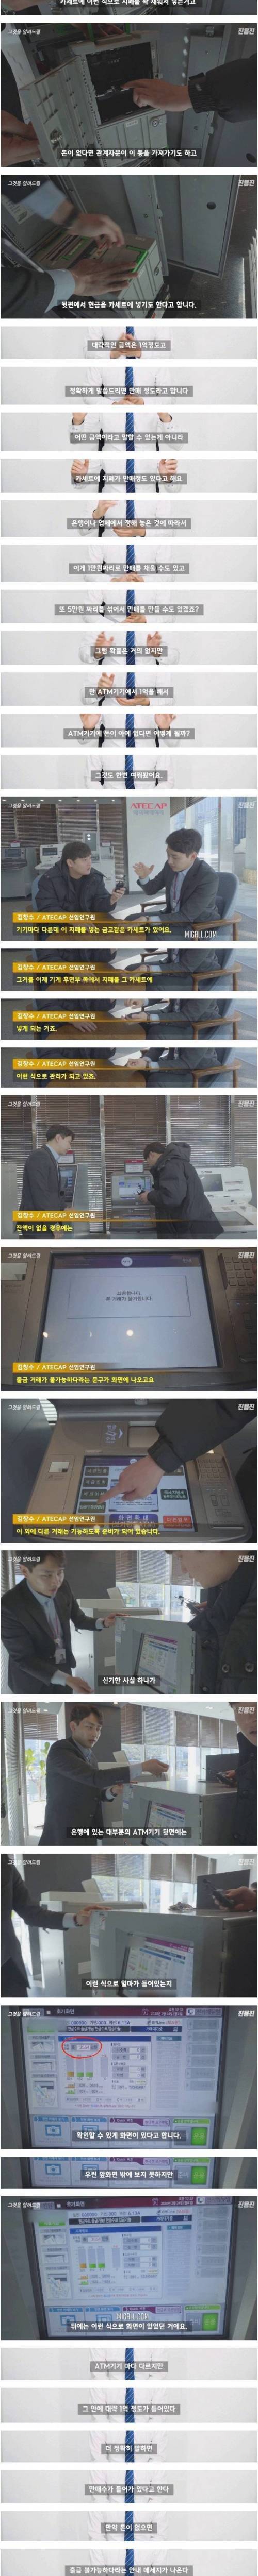 [스압] ATM 기기에는 돈이 얼마나 들어있을까?.jpg